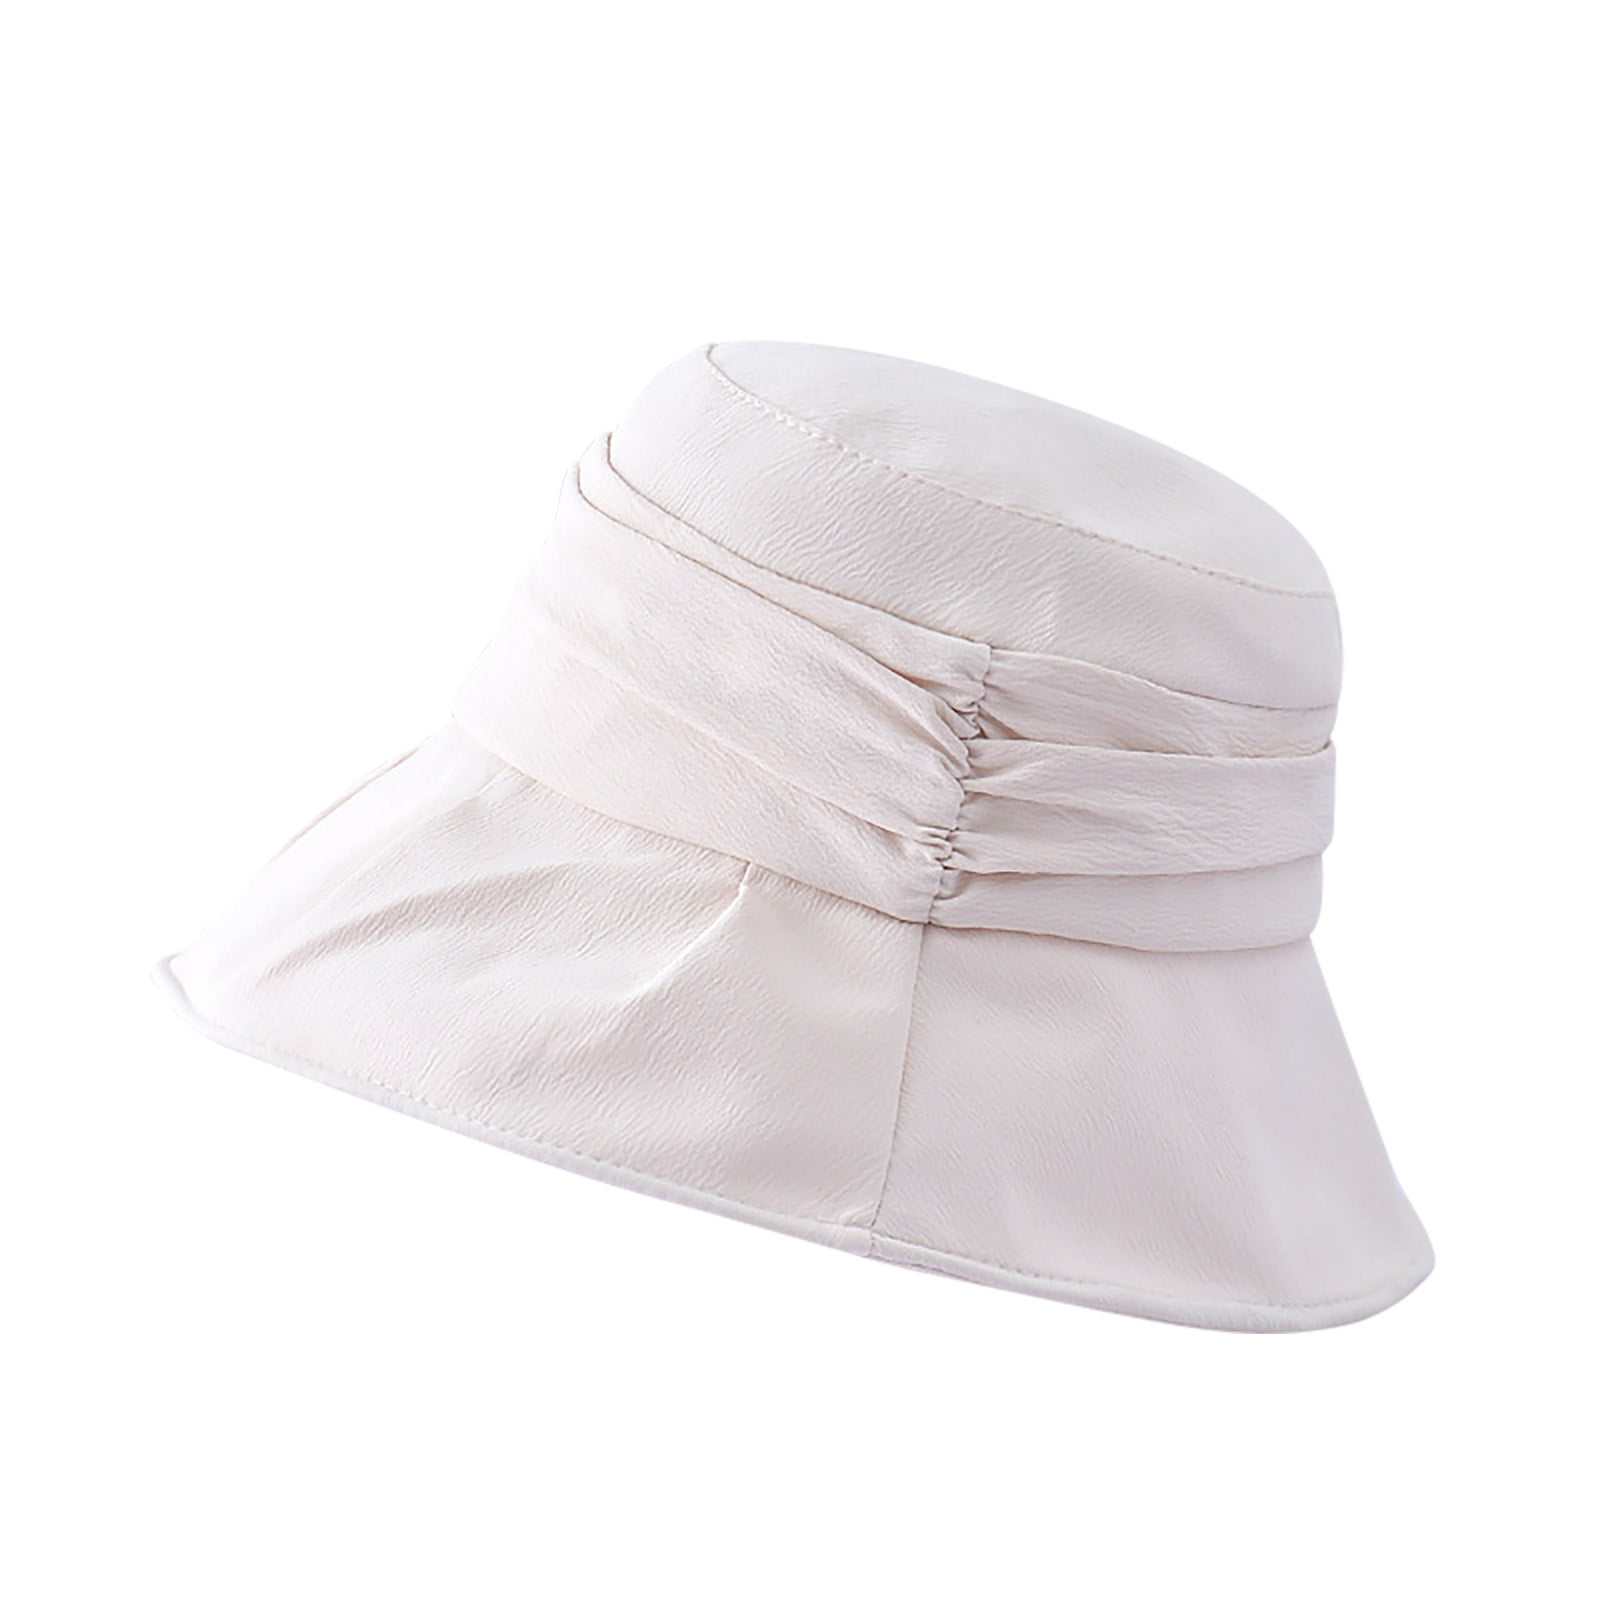 Floppy Sun Hat UPF 50 Wide Brim Braid Straw Cap Ladies Women Summer Beach Gorras 